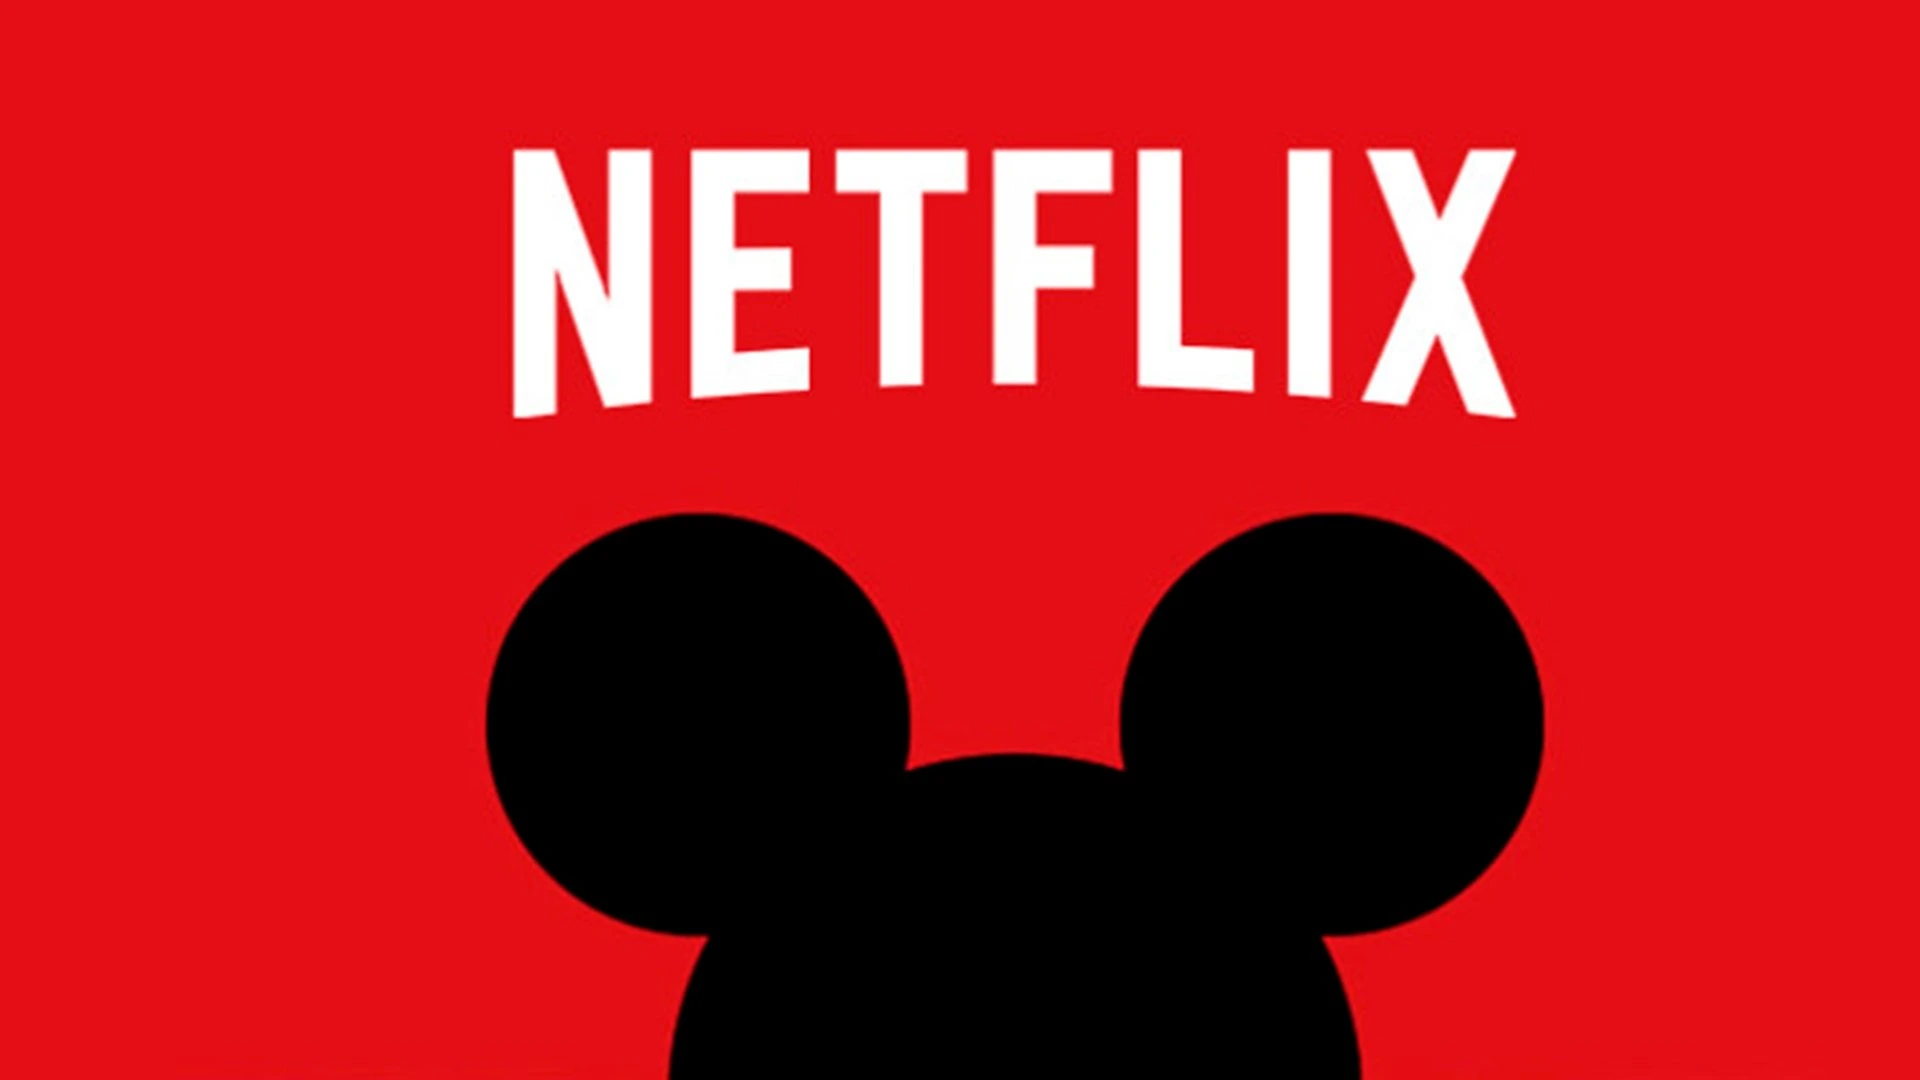 Google Play Filmes disponibiliza conteúdo da Netflix e do Disney+ nas  pesquisas - Canaltech